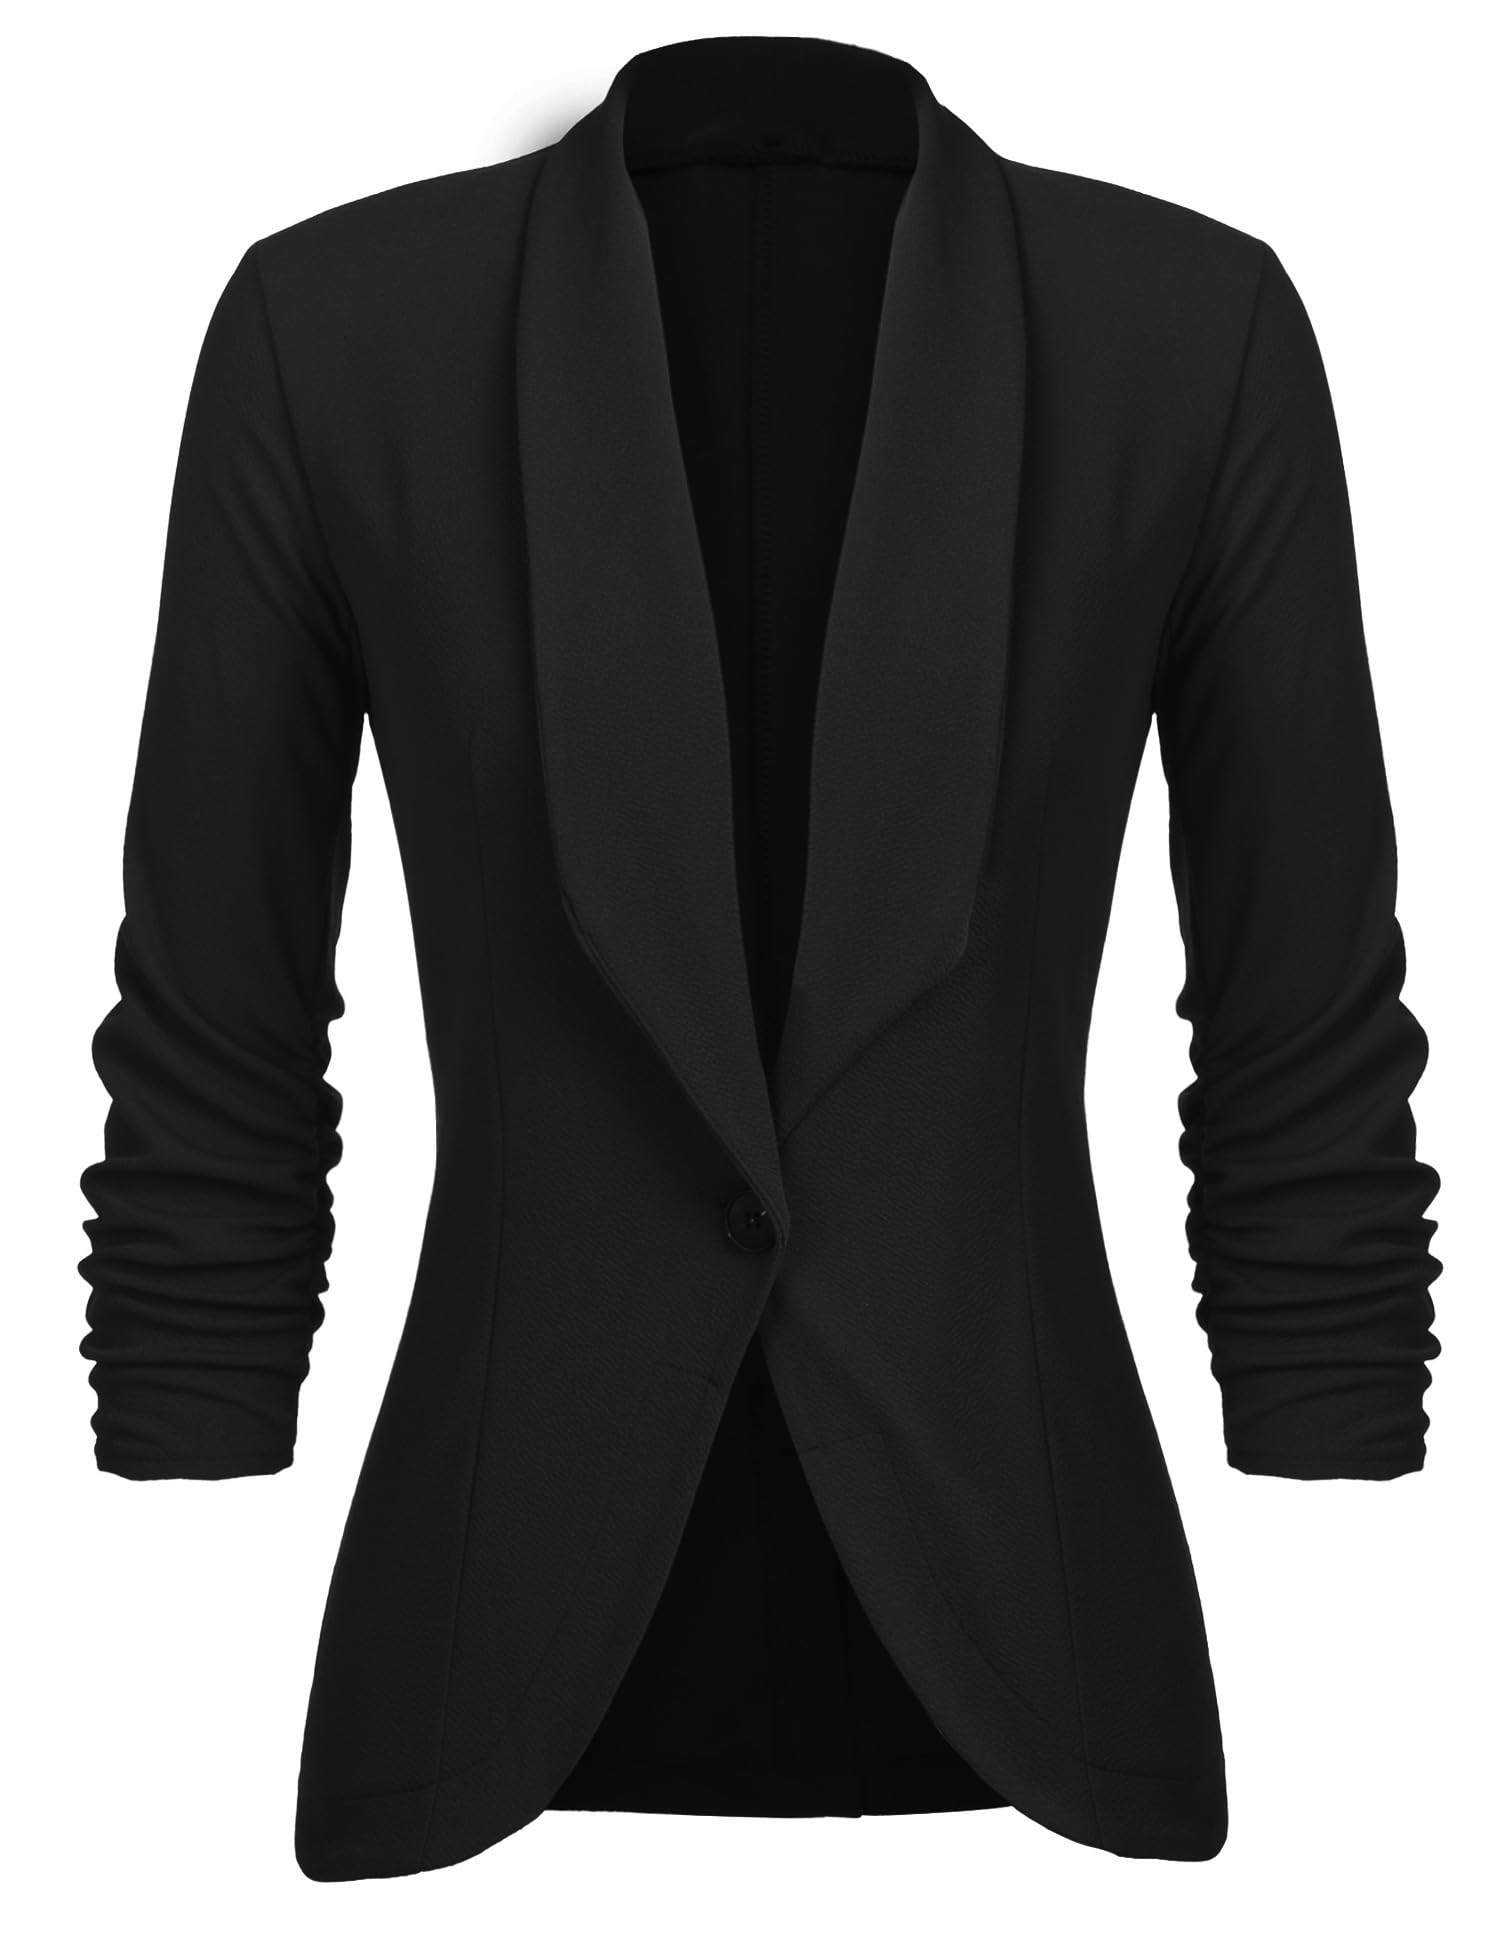 Unibelle Damen Blazer Cardigan Dünn 3/4 Längere Elegant Leicht Bolero Jacke Blazer Slim Fit Anzug Trenchcoat , A-schwarz, 42(Herstellergröße:XL)